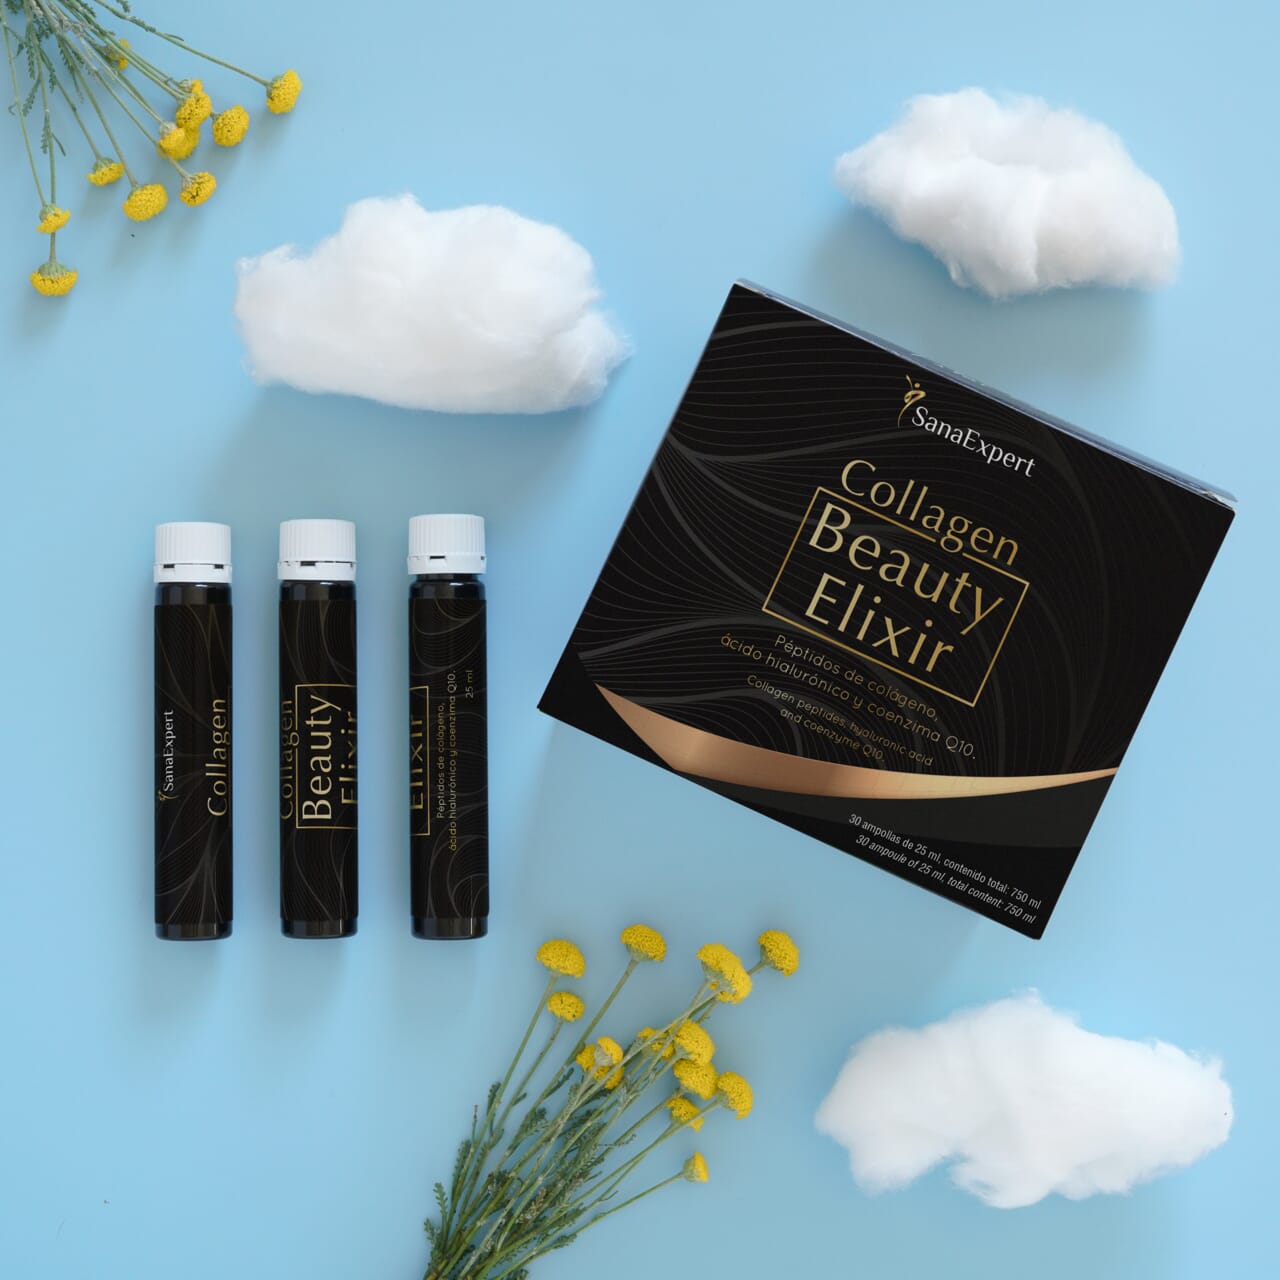 SanaExpert Collagen Beauty Elixir Verpackung und Flaschen, kreativ präsentiert auf einem Himmelblau-Hintergrund mit Wolkendekor und gelben Blumen.